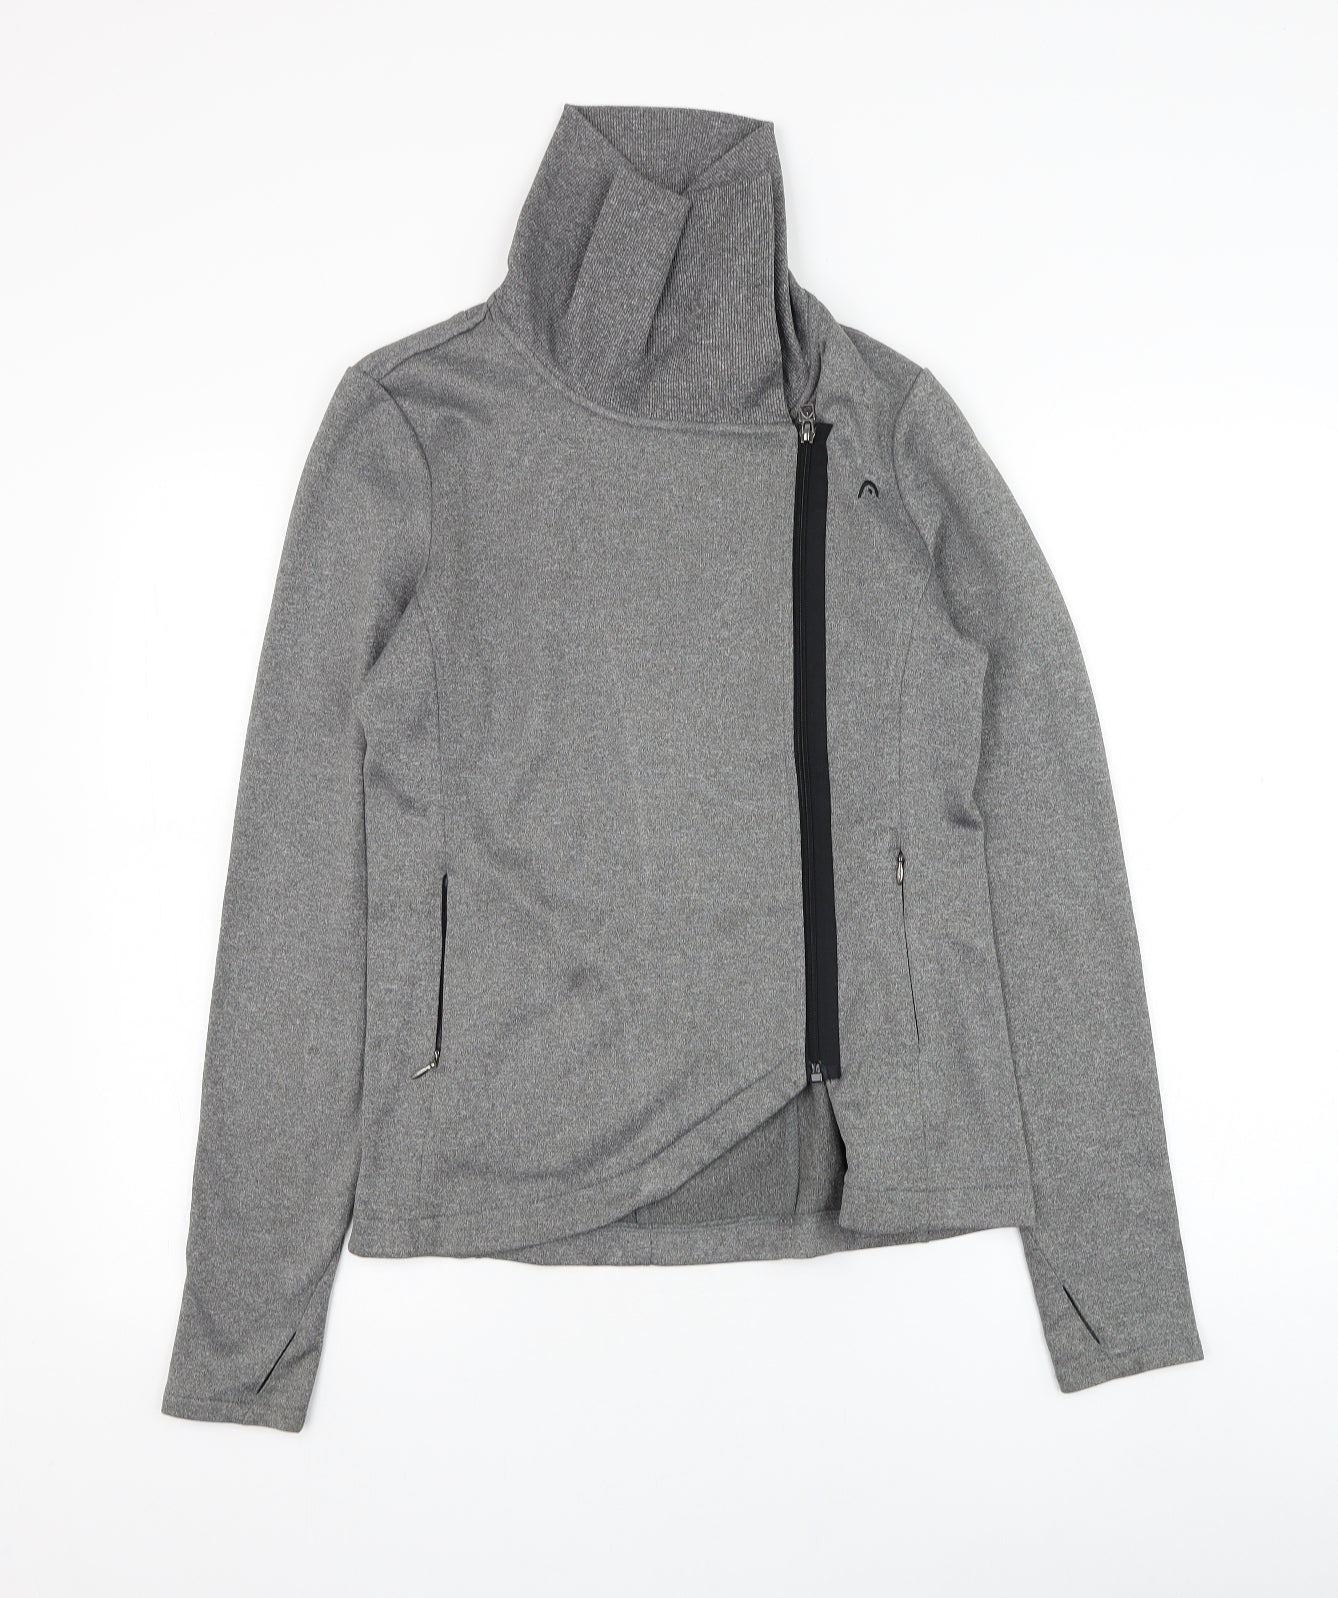 HEAD Womens Grey  Polyester Full Zip Sweatshirt Size S  Zip